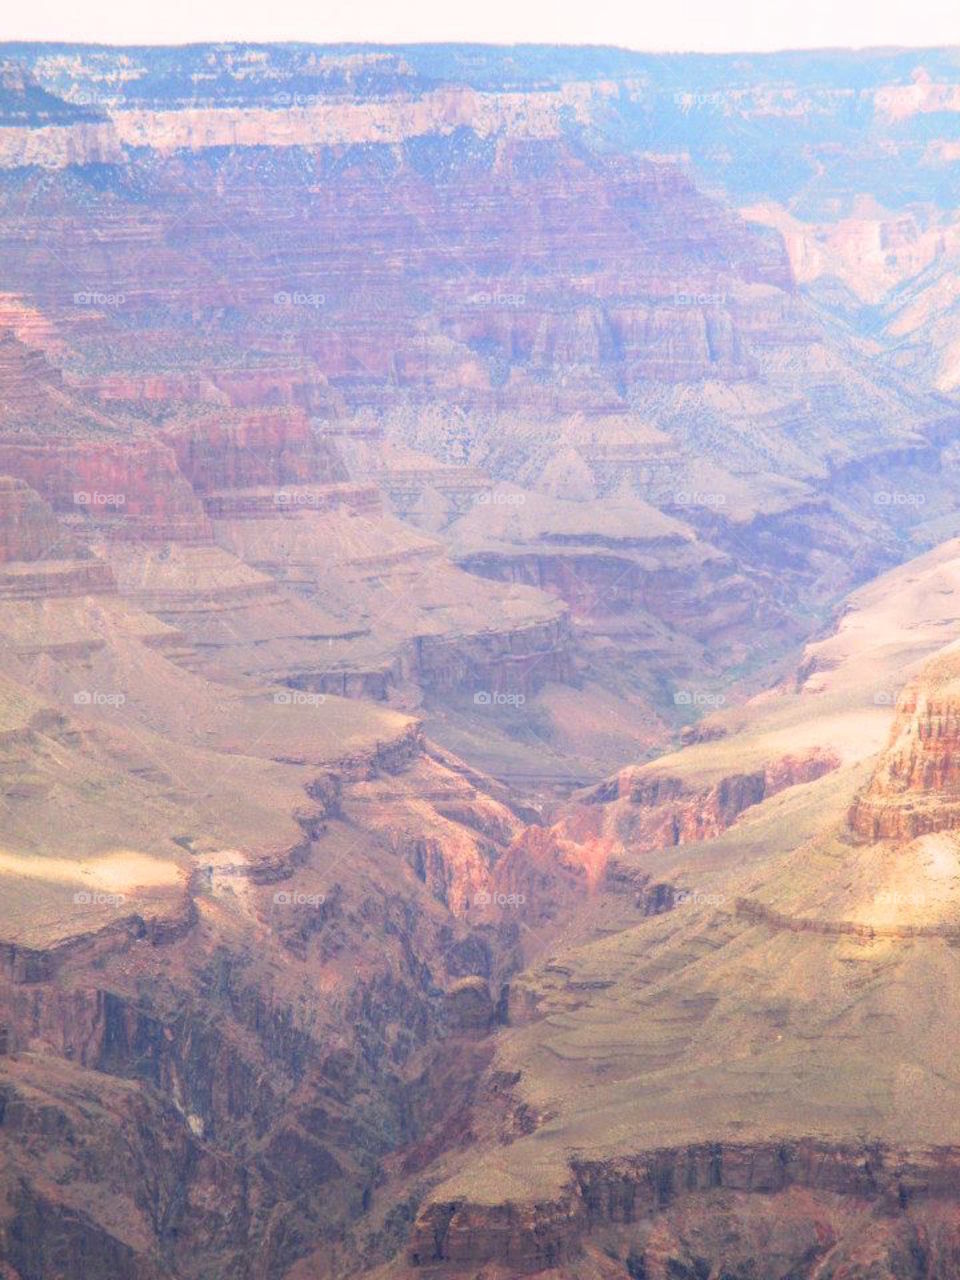 Grand Canyon. Taken on a 2013 trip 